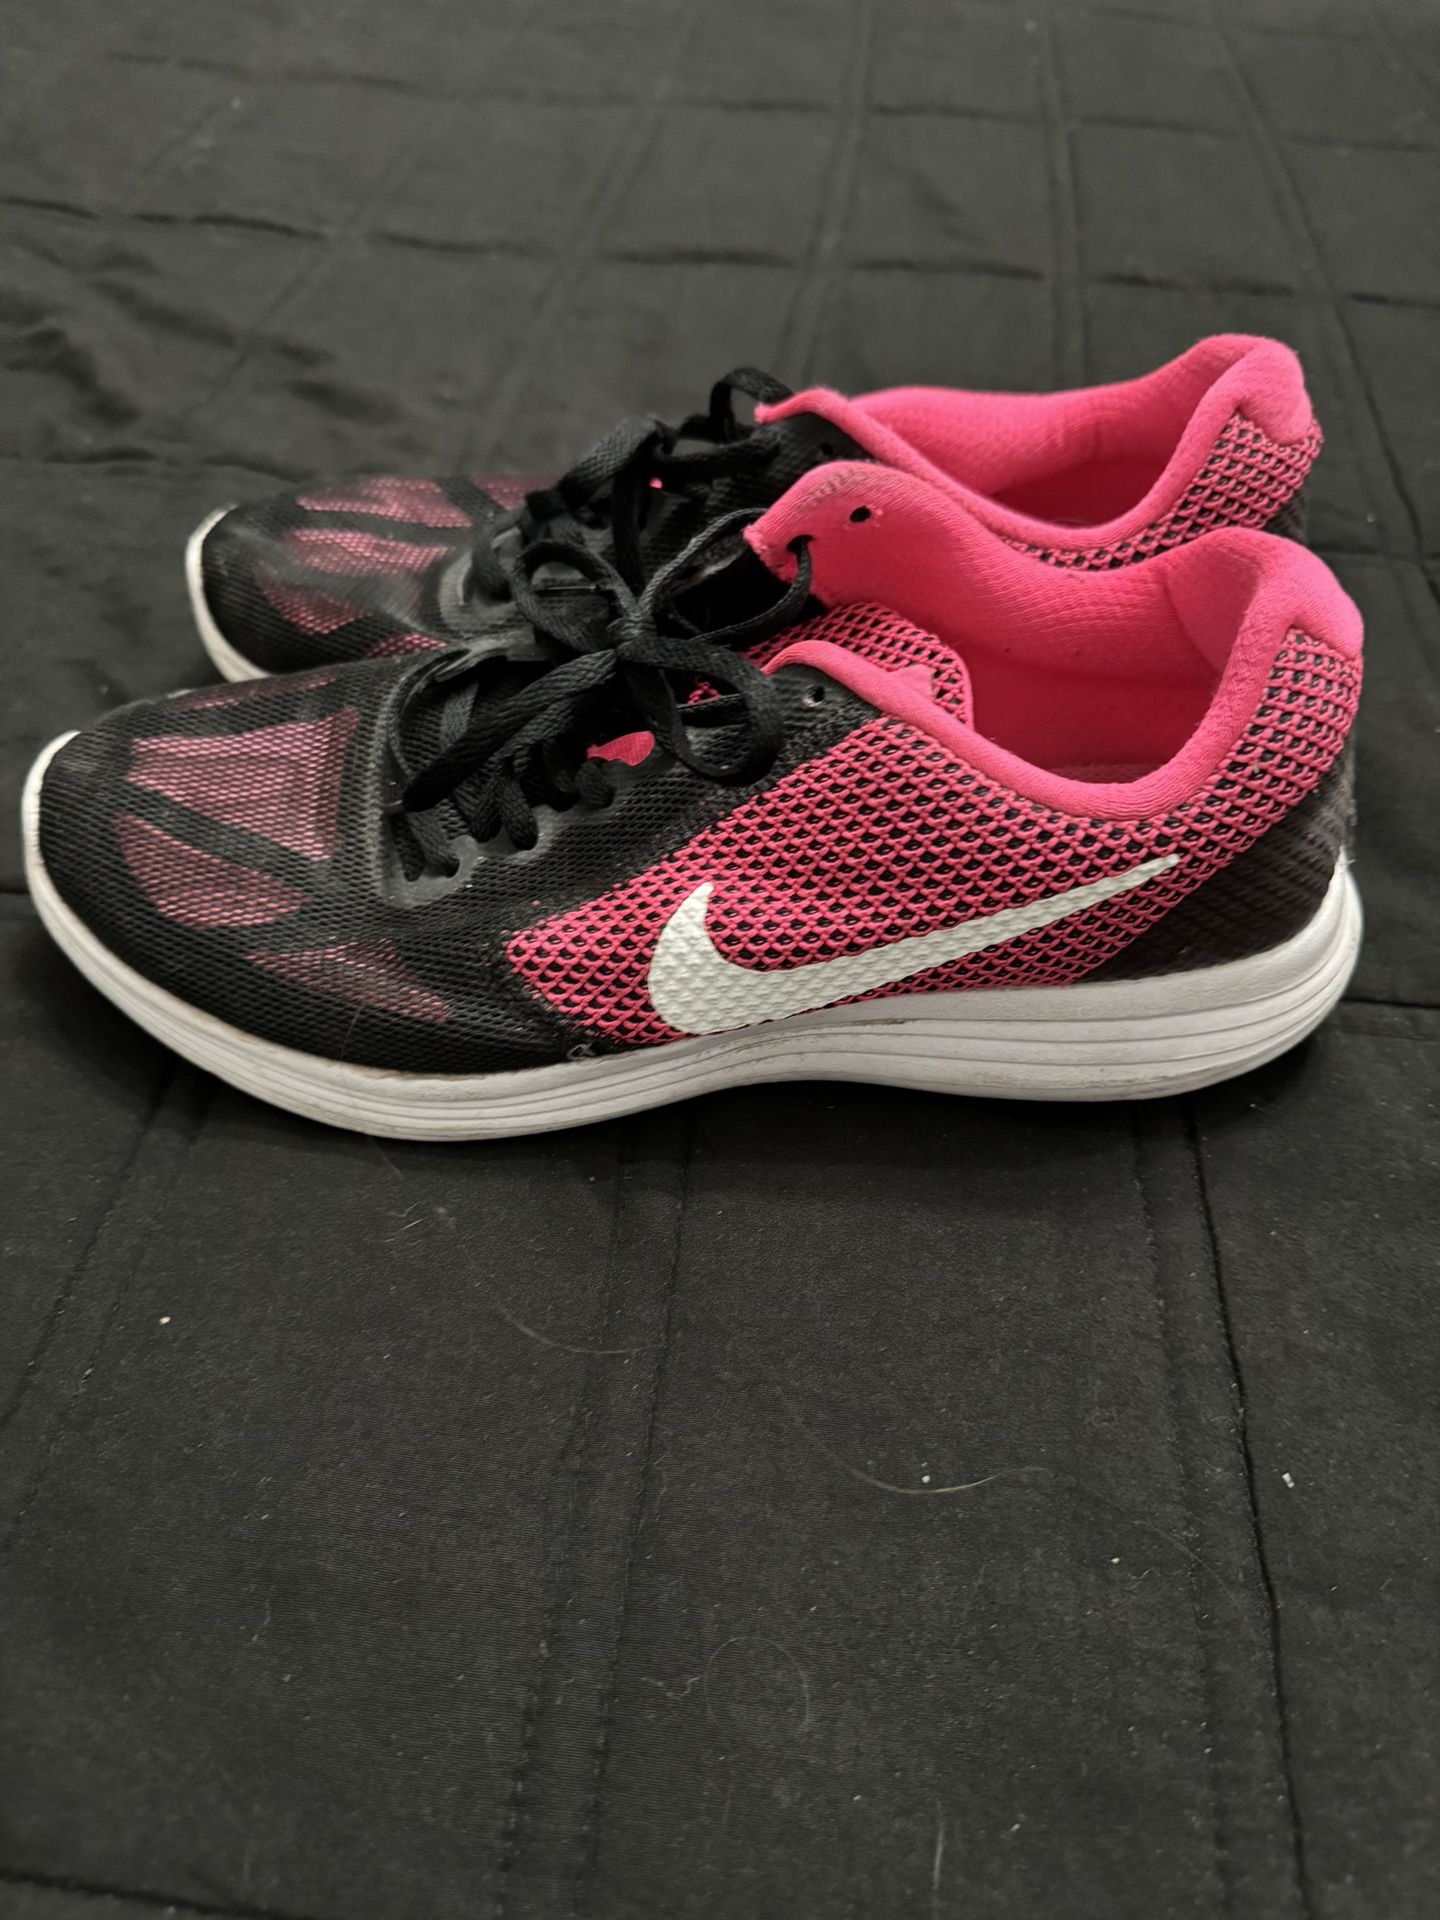 Nike Women Shoes 